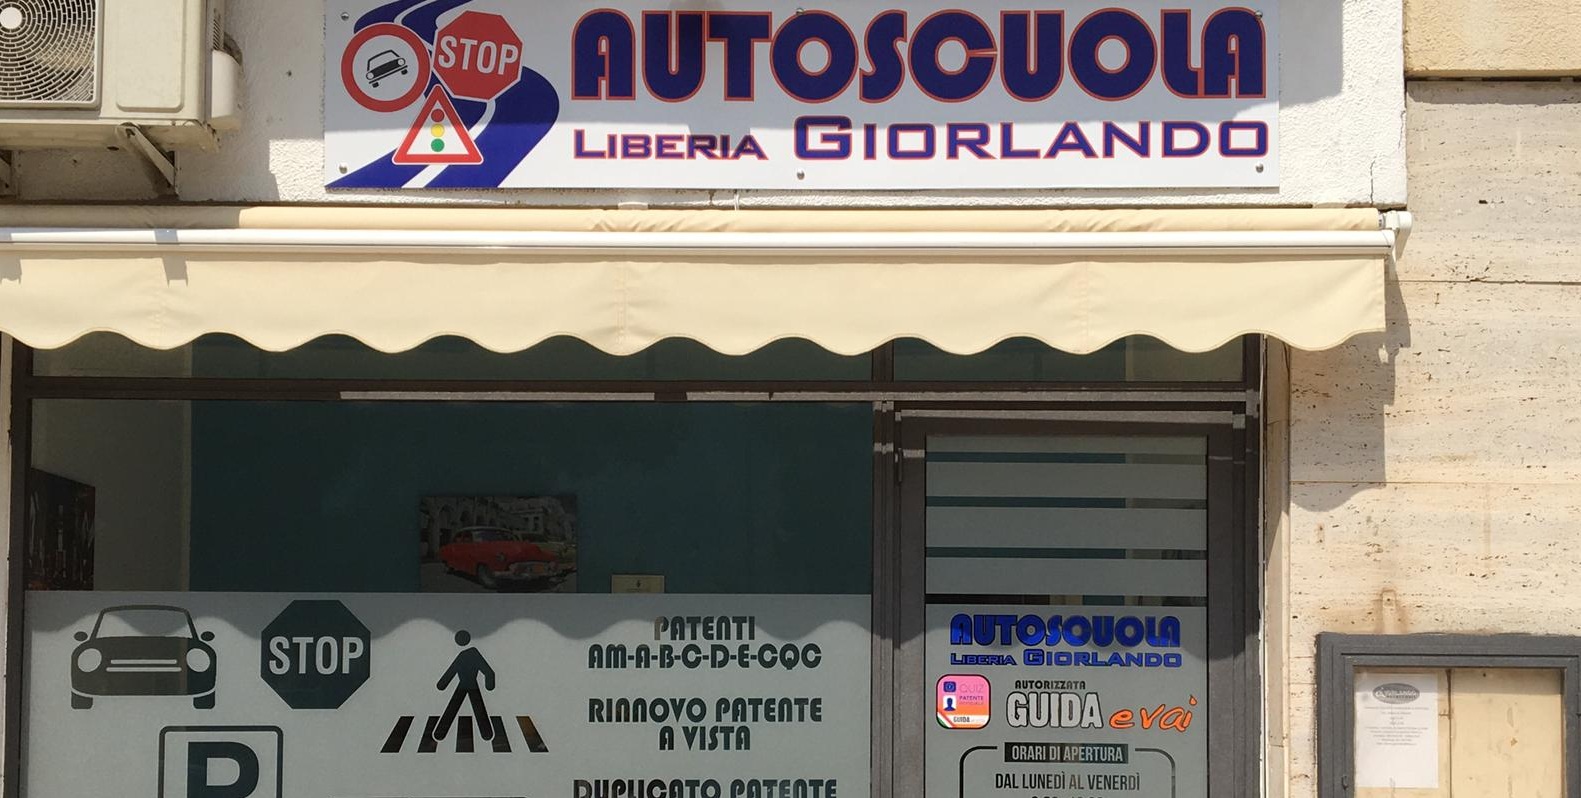 Autoscuola GIORLANDO LIBERIA 2